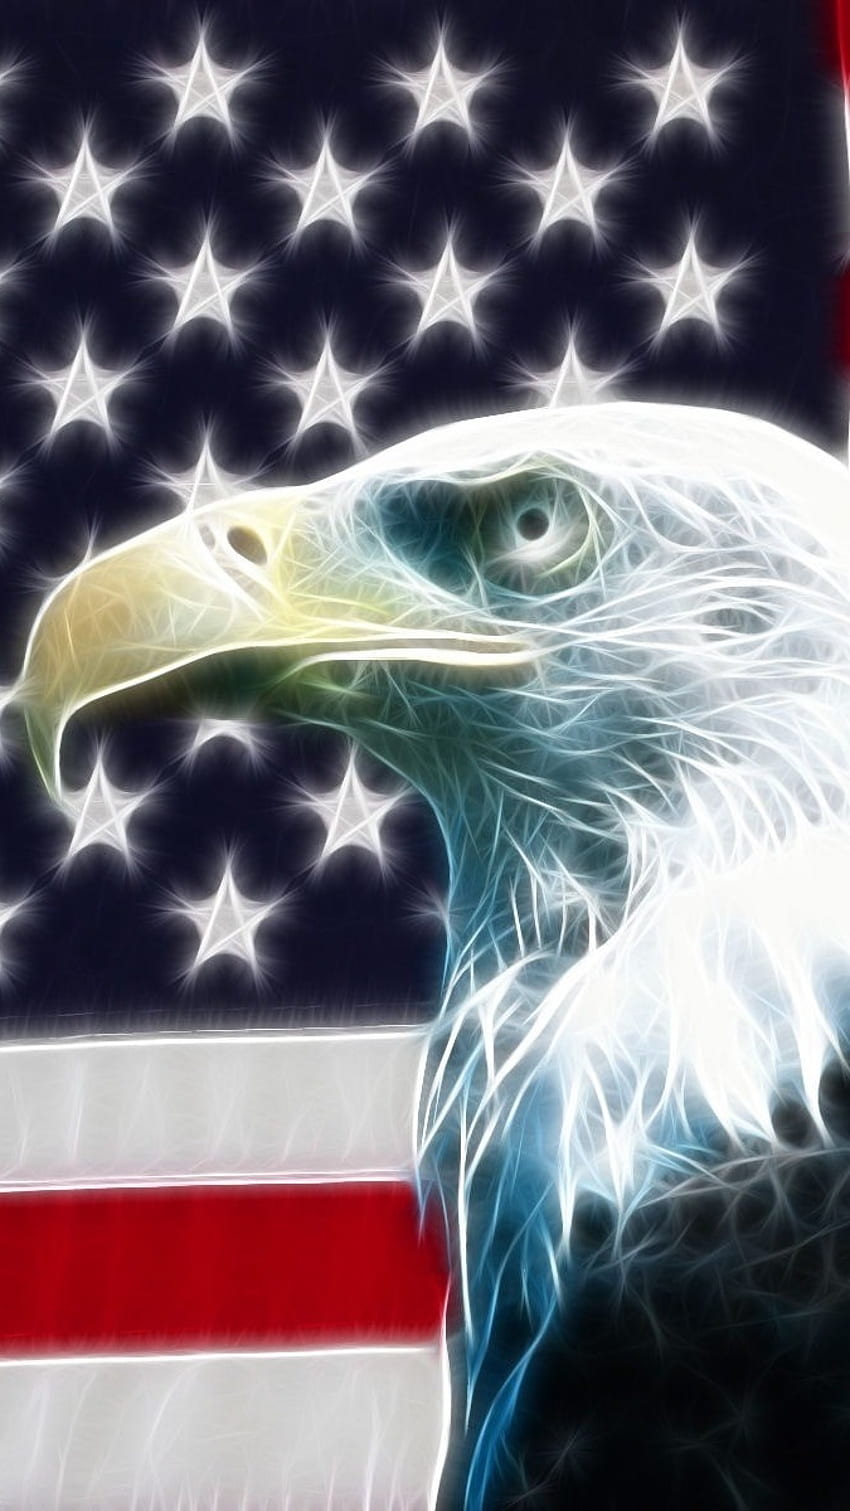 American Flag: Tế nhị đó là lá cờ Hoa Kỳ trân qua gió. Hình ảnh đẹp đến nao lòng này không thể bỏ qua. Con rất nhiều tư liệu lịch sử cũng như văn hóa đậm chất Hoa Kỳ được dựng lên quanh nó. Cúi xuống và hãy để hình ảnh này lấn át trái tim bạn.